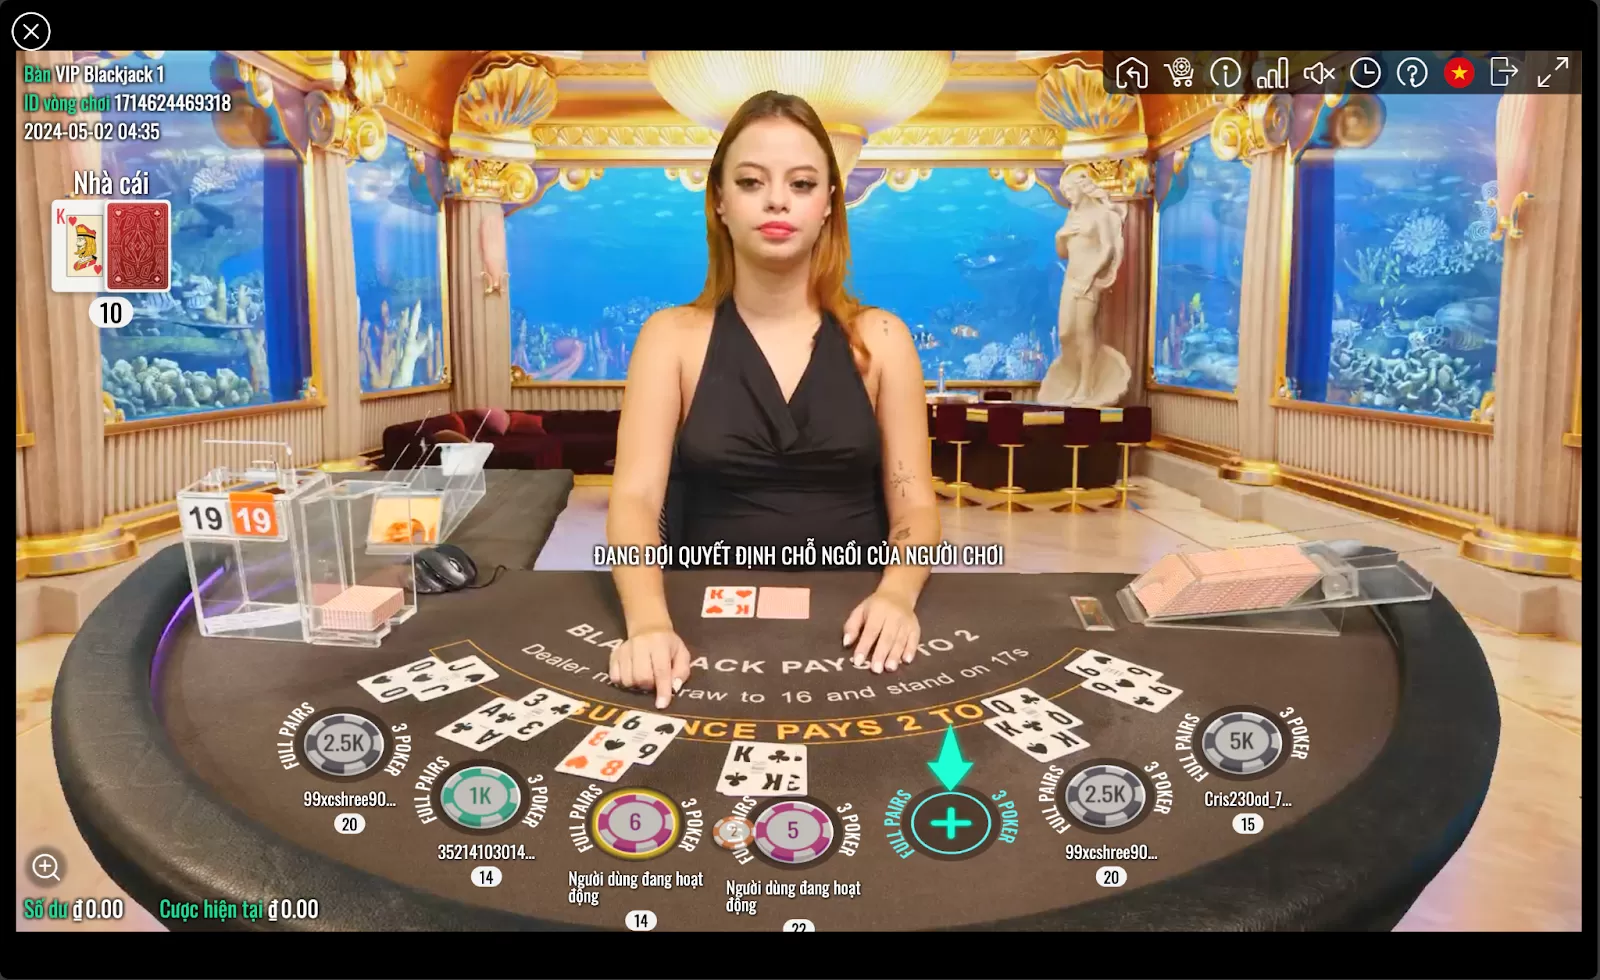 Trải nghiệm chơi Xì dách (Blackjack) Live Casino tại nhà cái Fabet